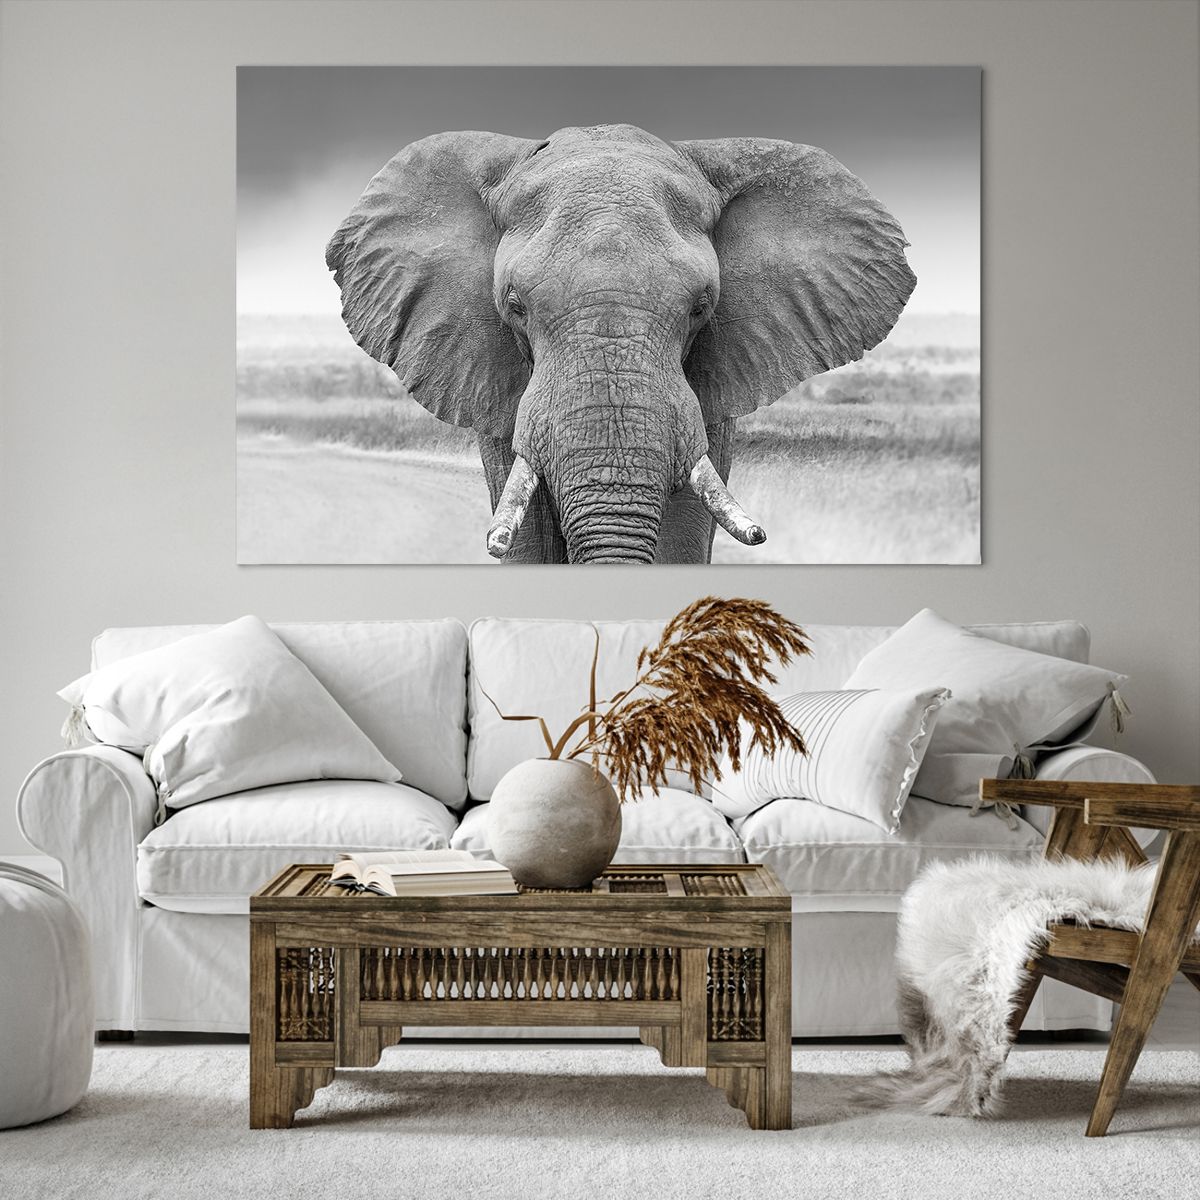 Bild auf Leinwand Elefant, Bild auf Leinwand Afrika, Bild auf Leinwand Tiere, Bild auf Leinwand Natur, Bild auf Leinwand Schwarz Und Weiß